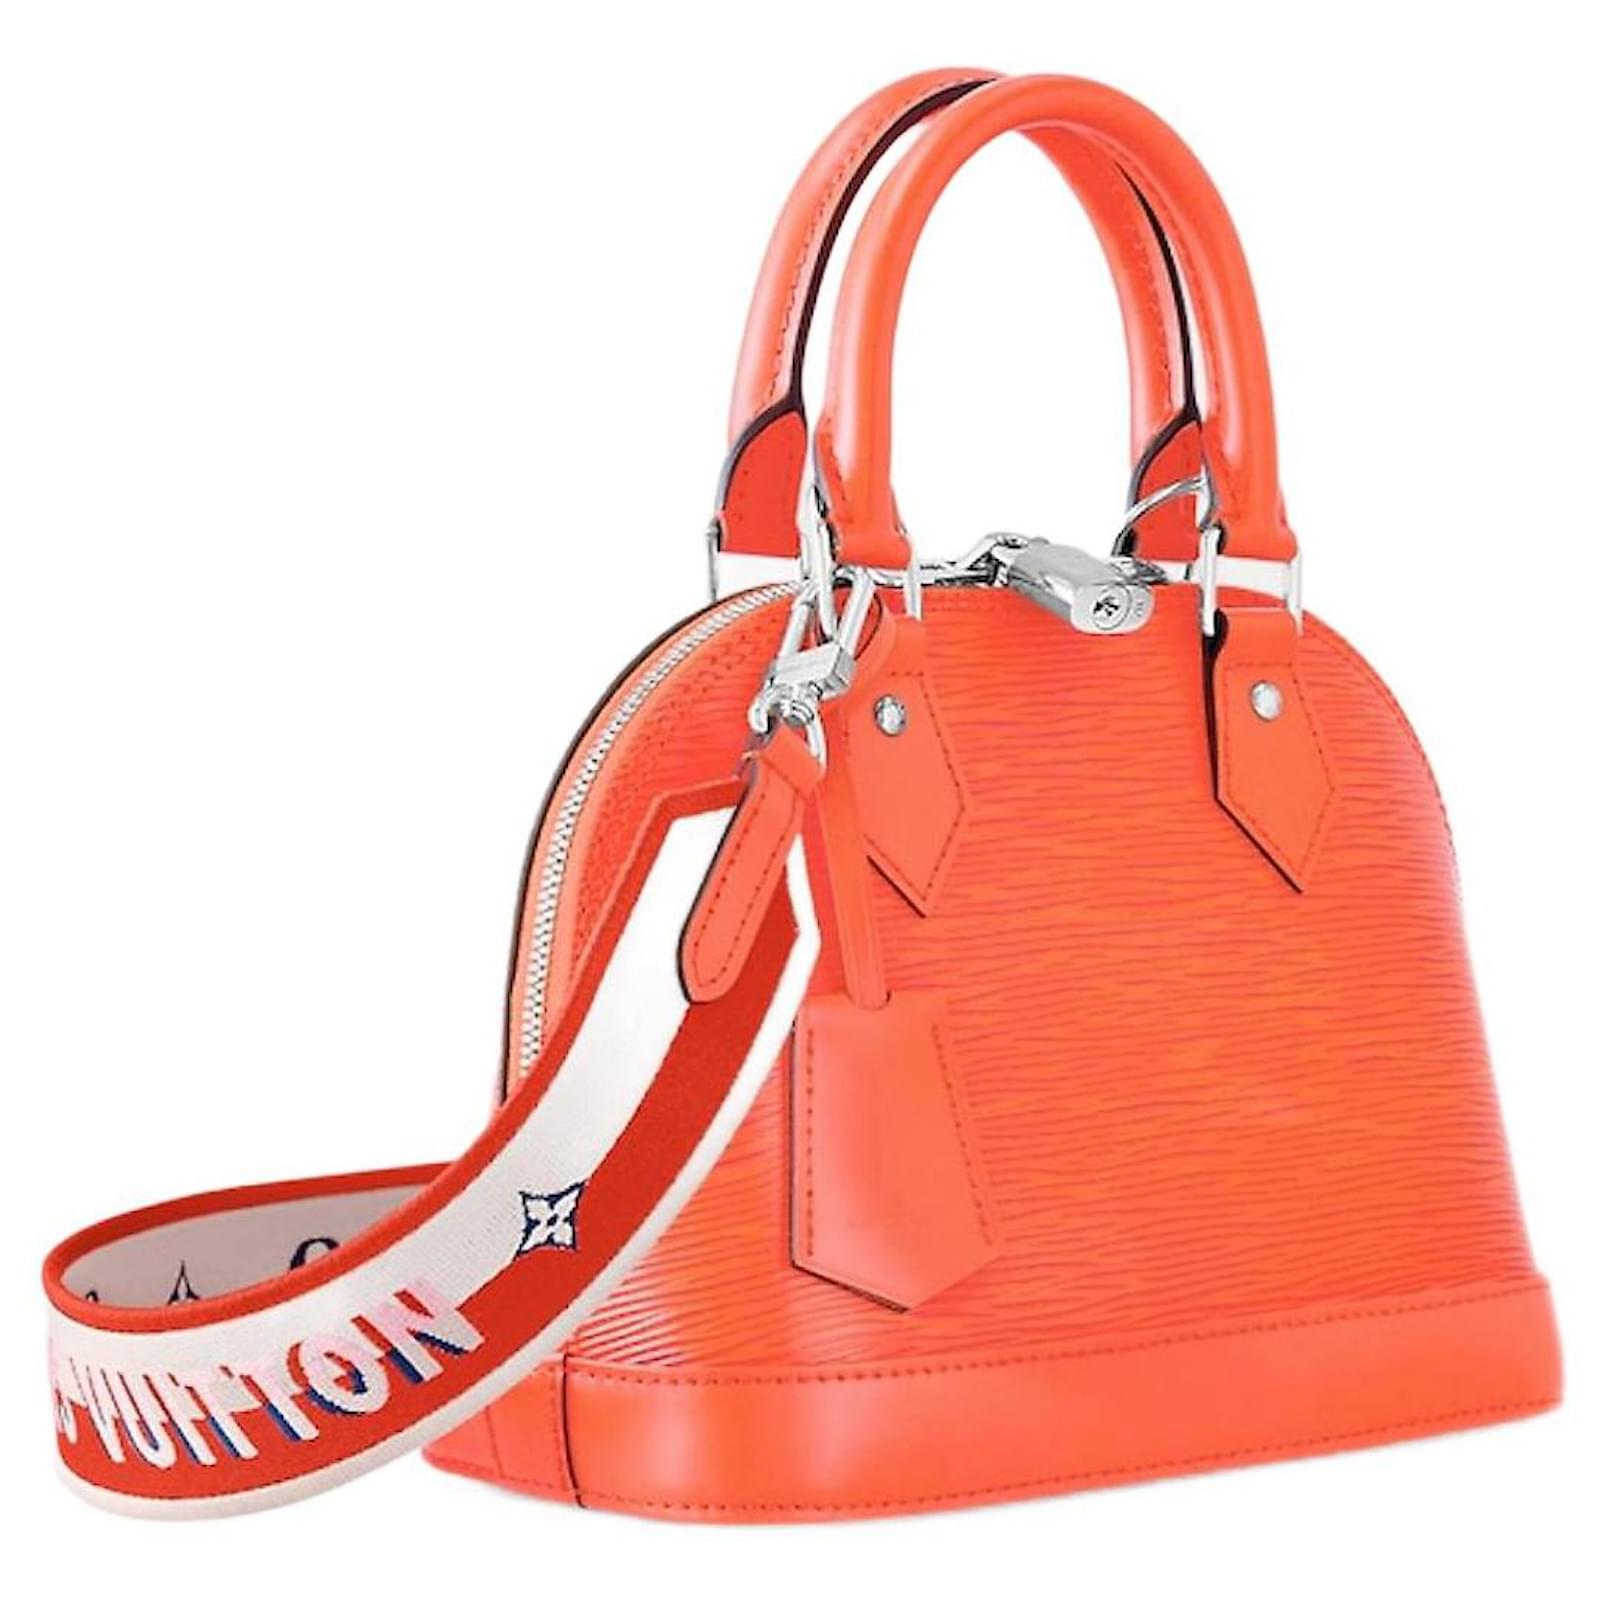 Alma BB bag in orange epi leather